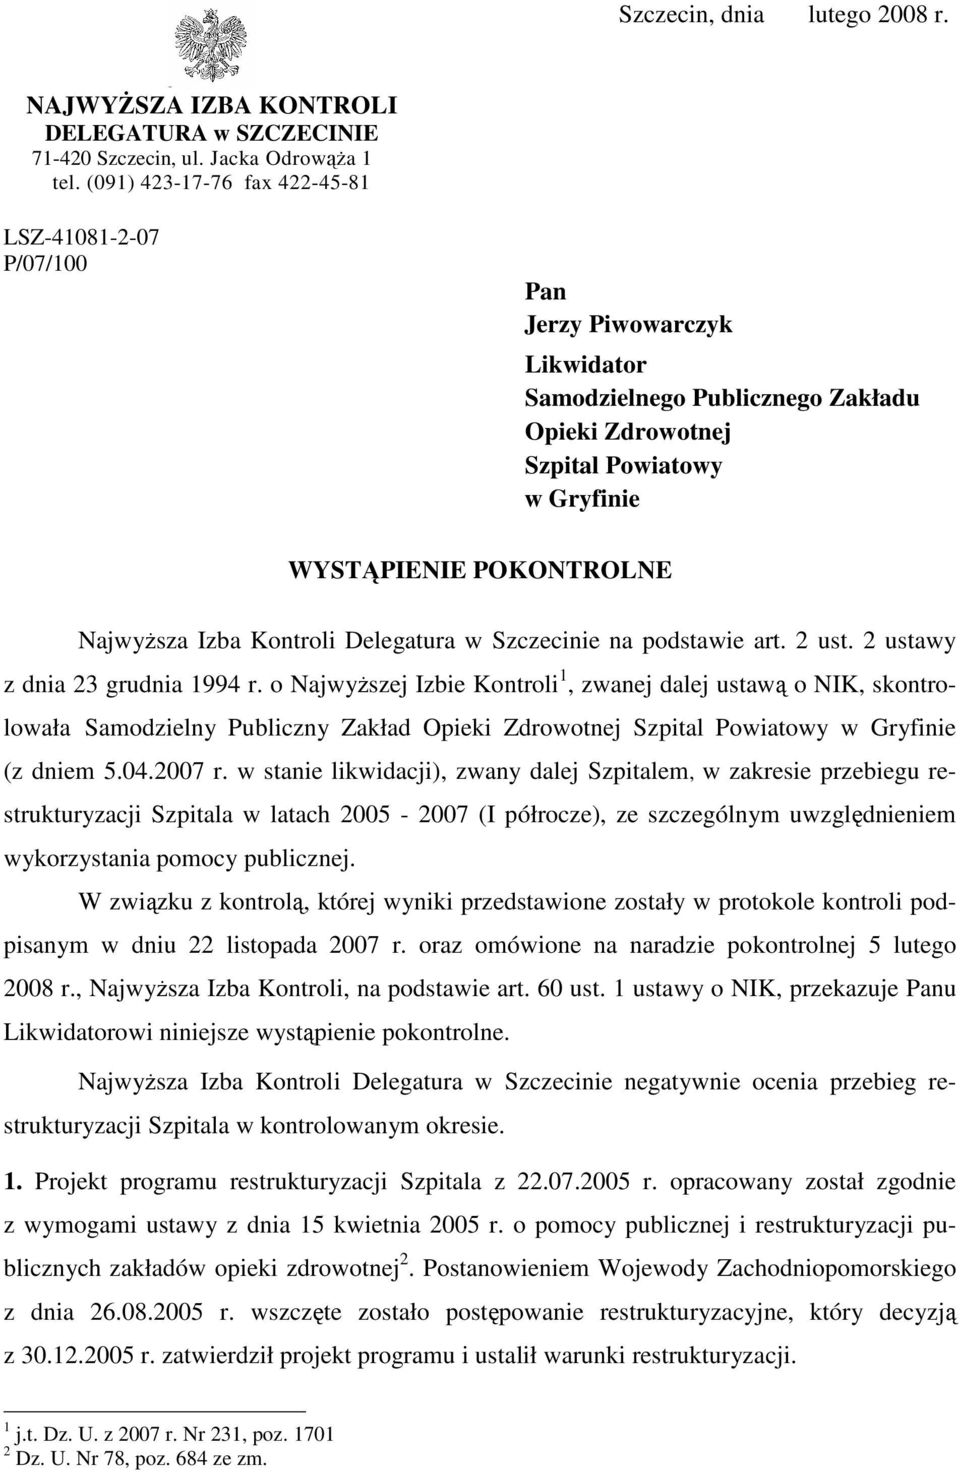 NajwyŜsza Izba Kontroli Delegatura w Szczecinie na podstawie art. 2 ust. 2 ustawy z dnia 23 grudnia 1994 r.